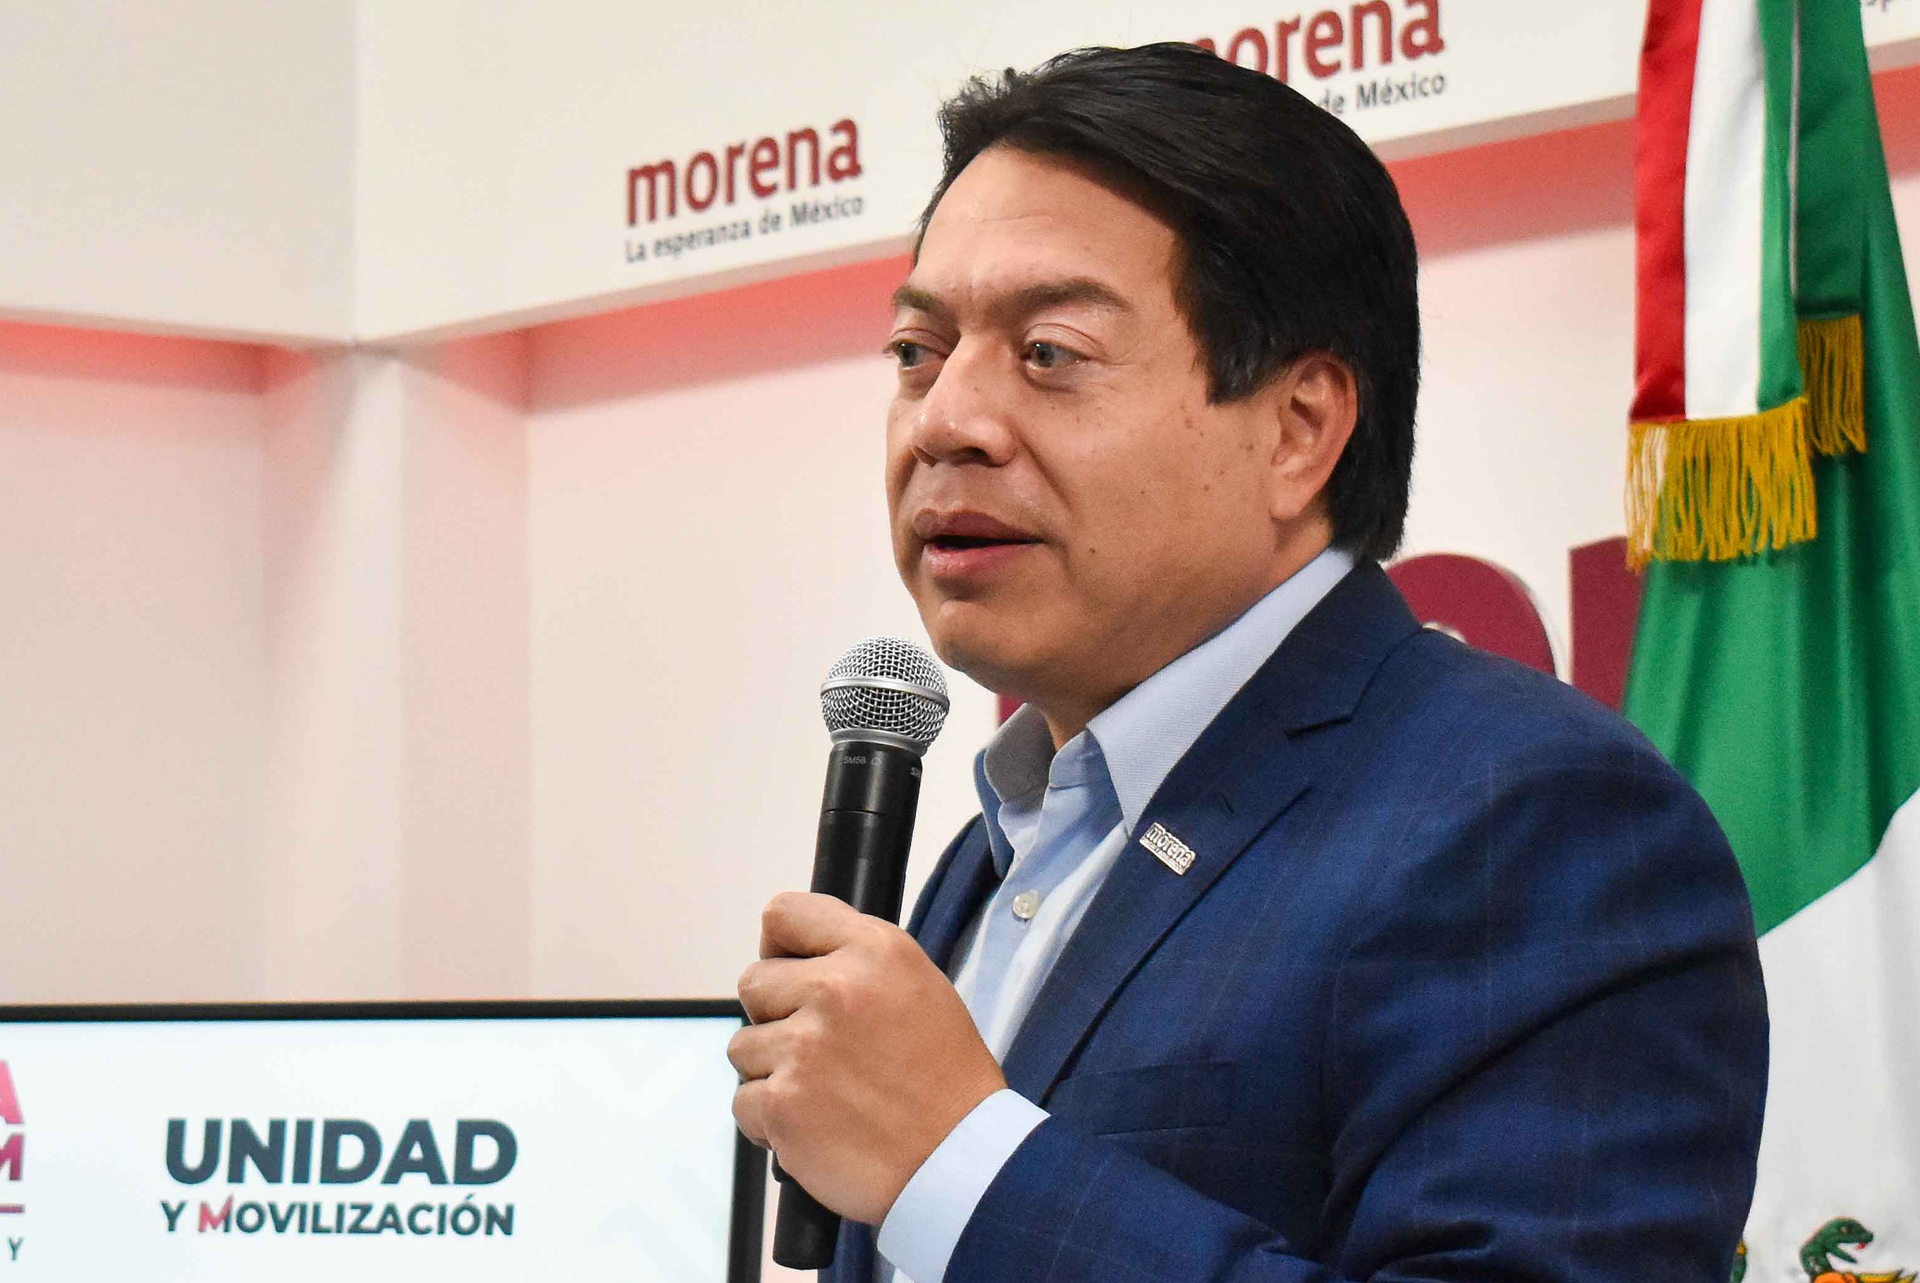 El dirigente nacional de Morena, Mario Delgado, exhortó que el INE dé certidumbre al proceso electoral y que las instituciones caminen lo mejor posible.